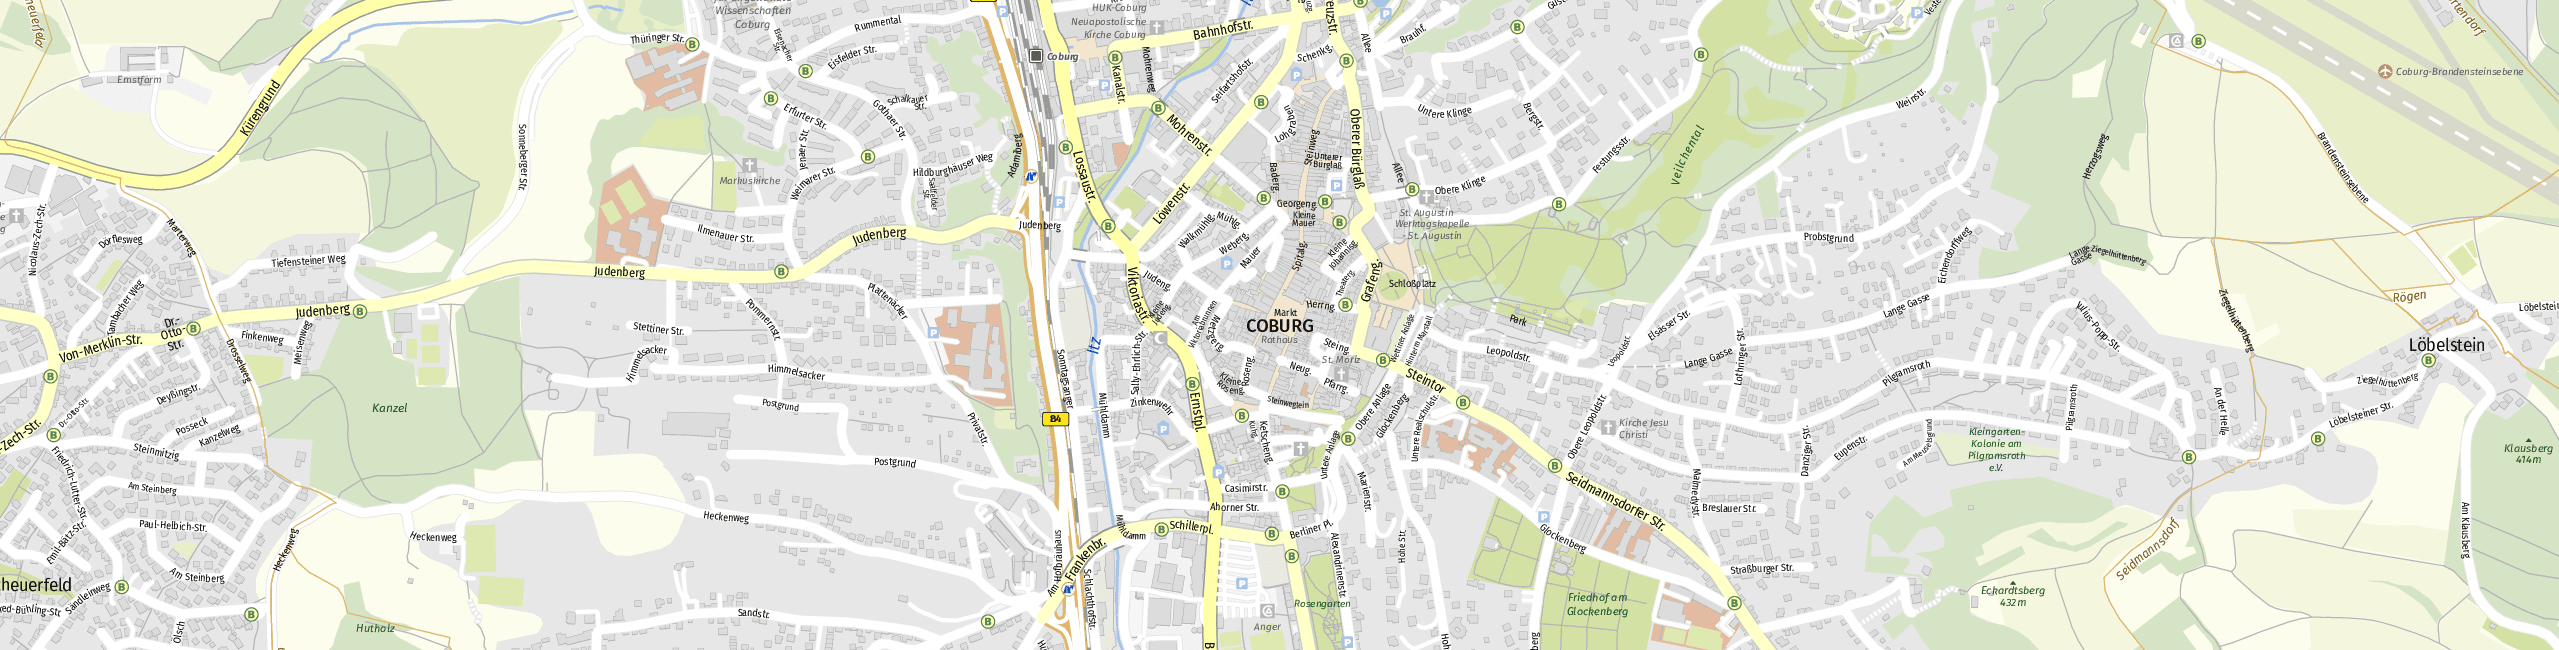 Stadtplan Coburg zum Downloaden.